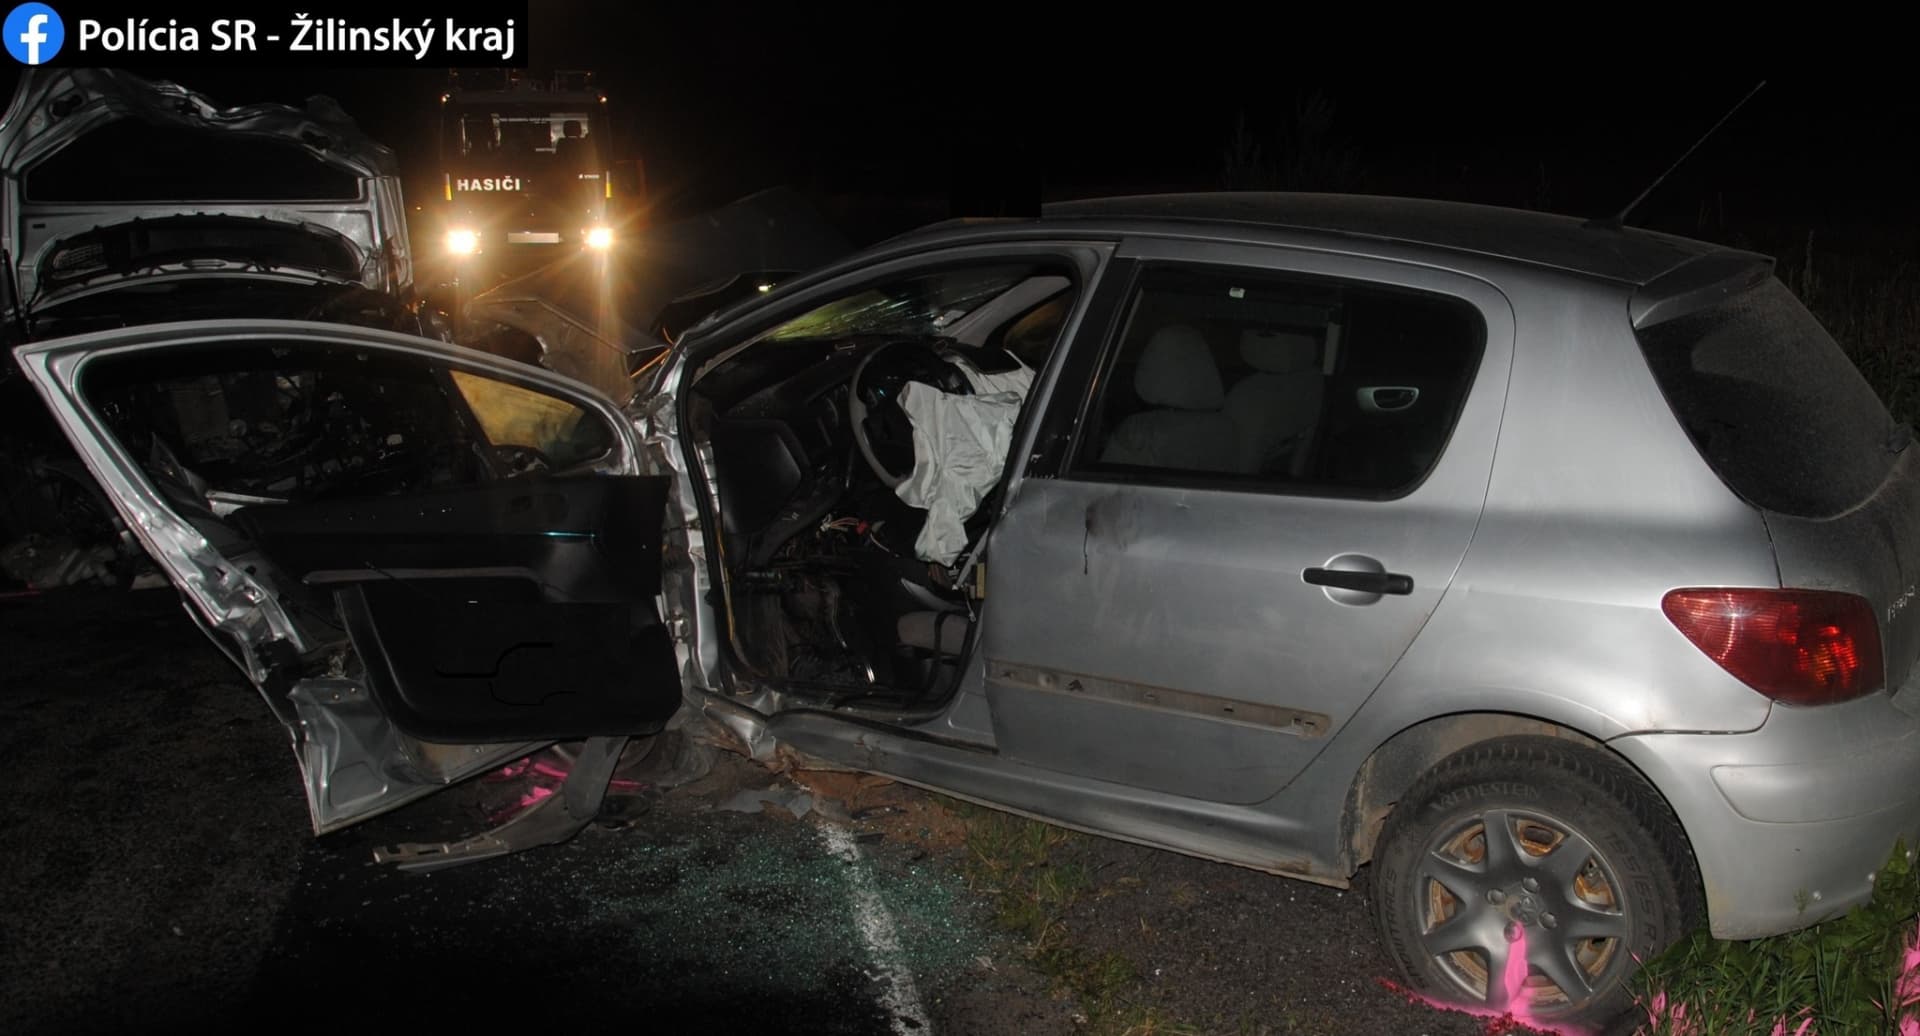 Tragédia: A Mercedes sofőrje áthajtott a szembejövő sávba, a Peugeot sofőrje nem élte túl a balesetet